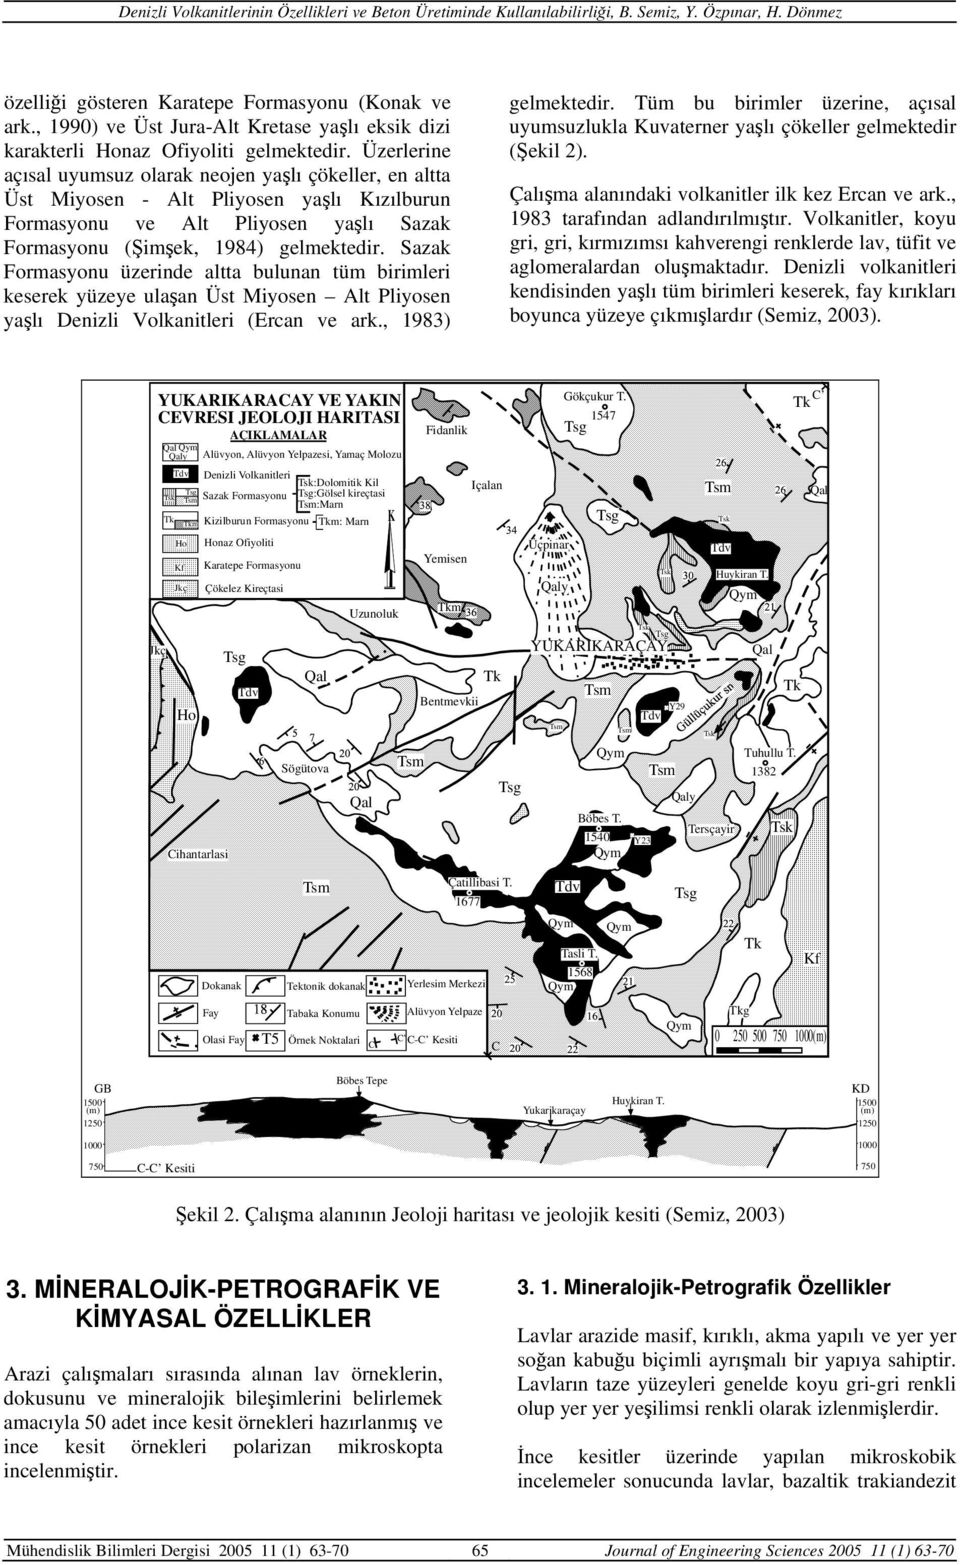 Sazak Formasyonu üzerinde altta bulunan tüm birimleri keserek yüzeye ulaşan Üst Miyosen Alt Pliyosen yaşlı Denizli Volkanitleri (Ercan ve ark., 1983) gelmektedir.